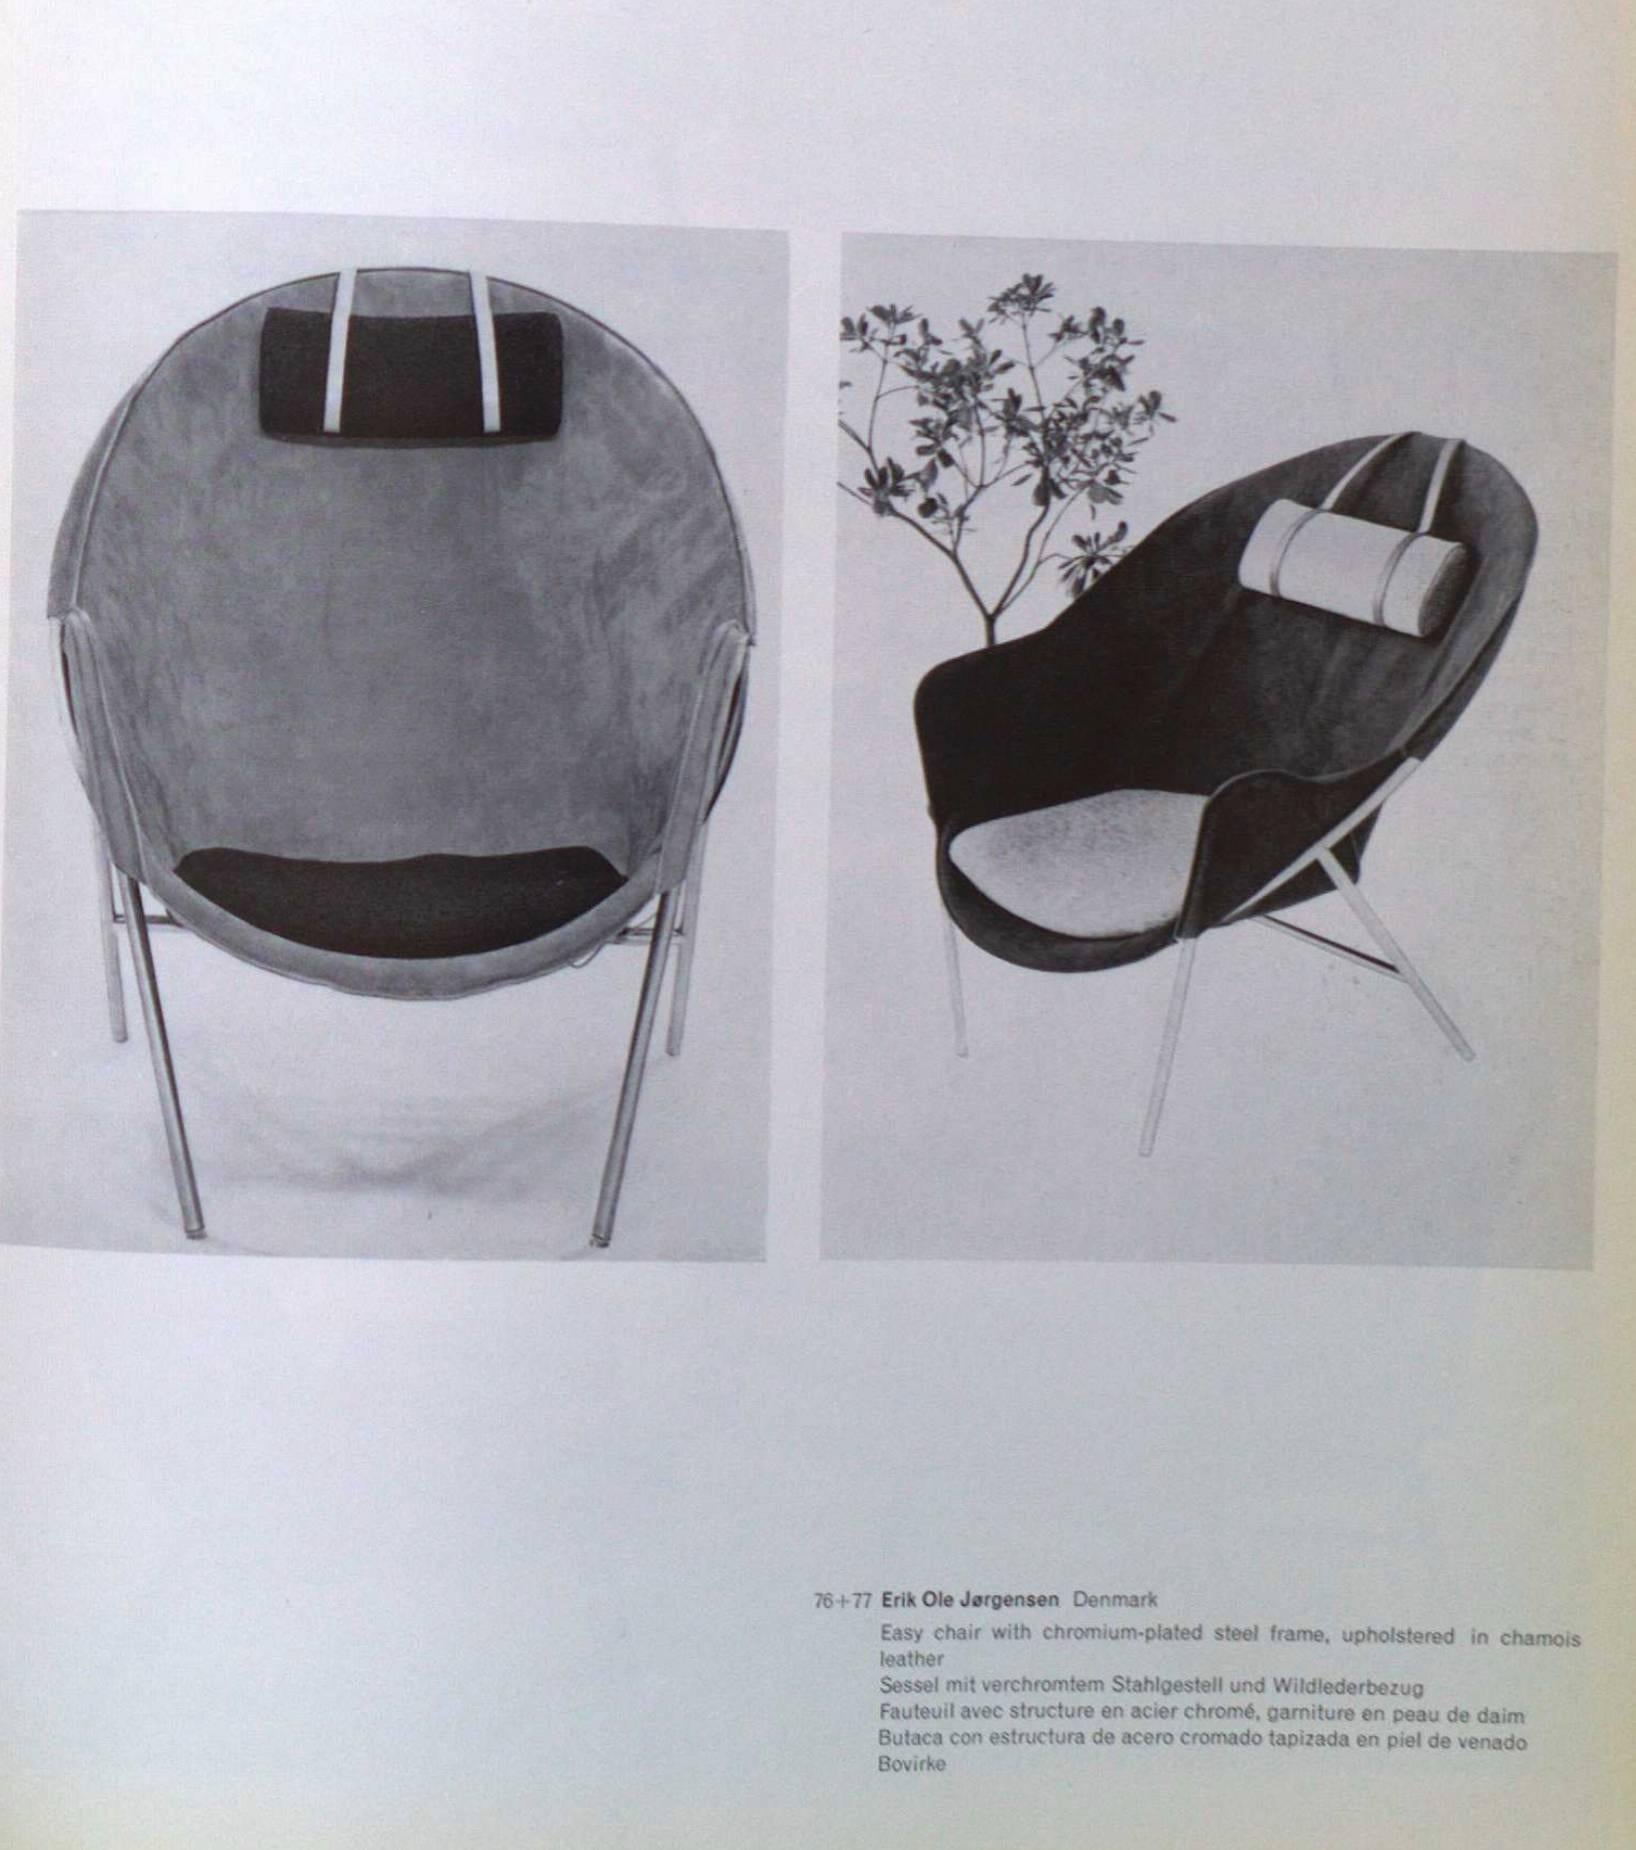 Mid-20th Century Easy Chair by Erik Ole Jorgensen